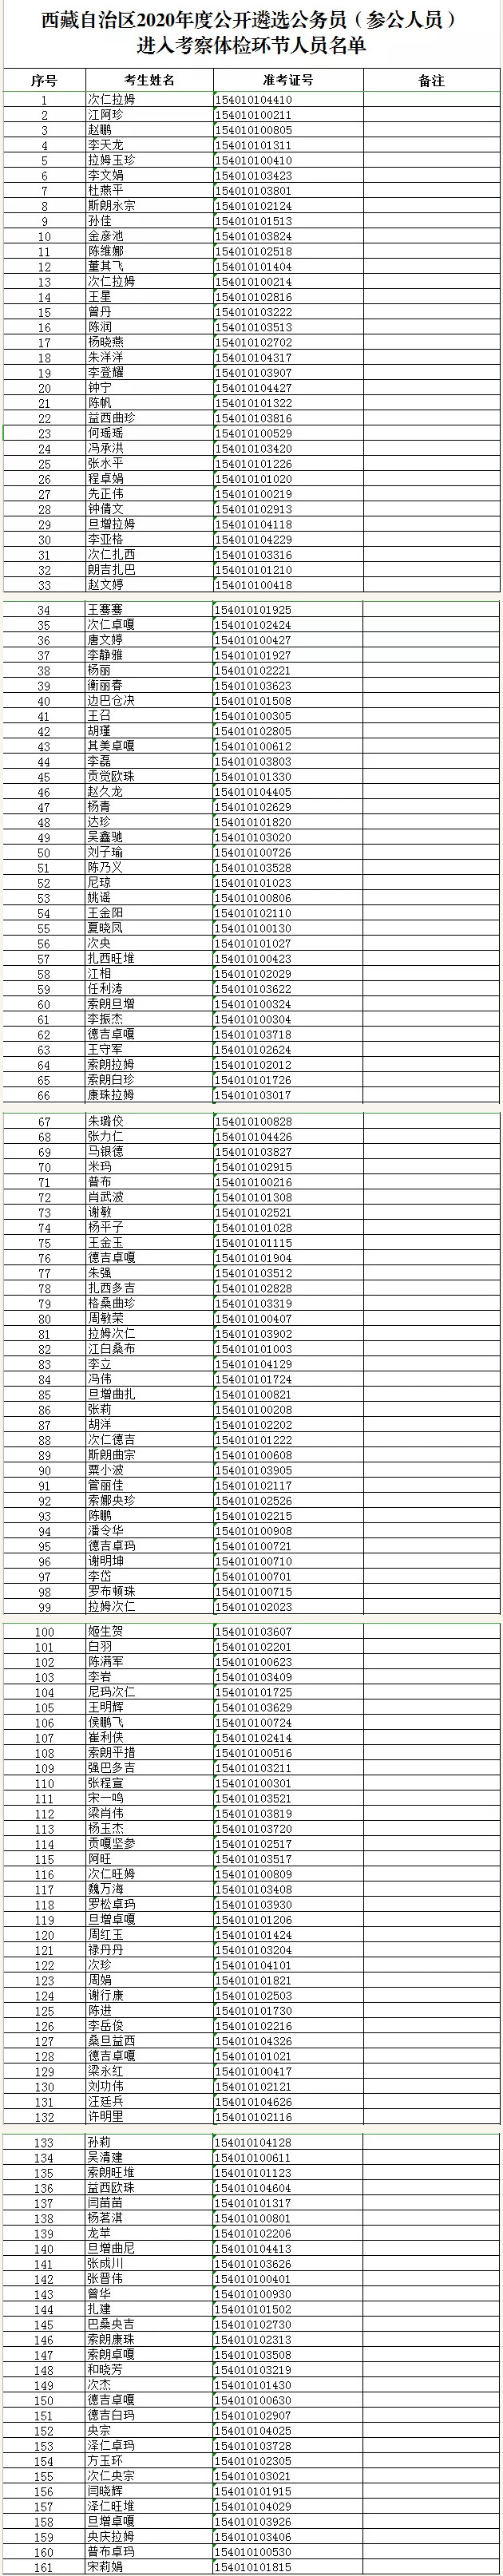 西藏遴选考察体检名单.jpg